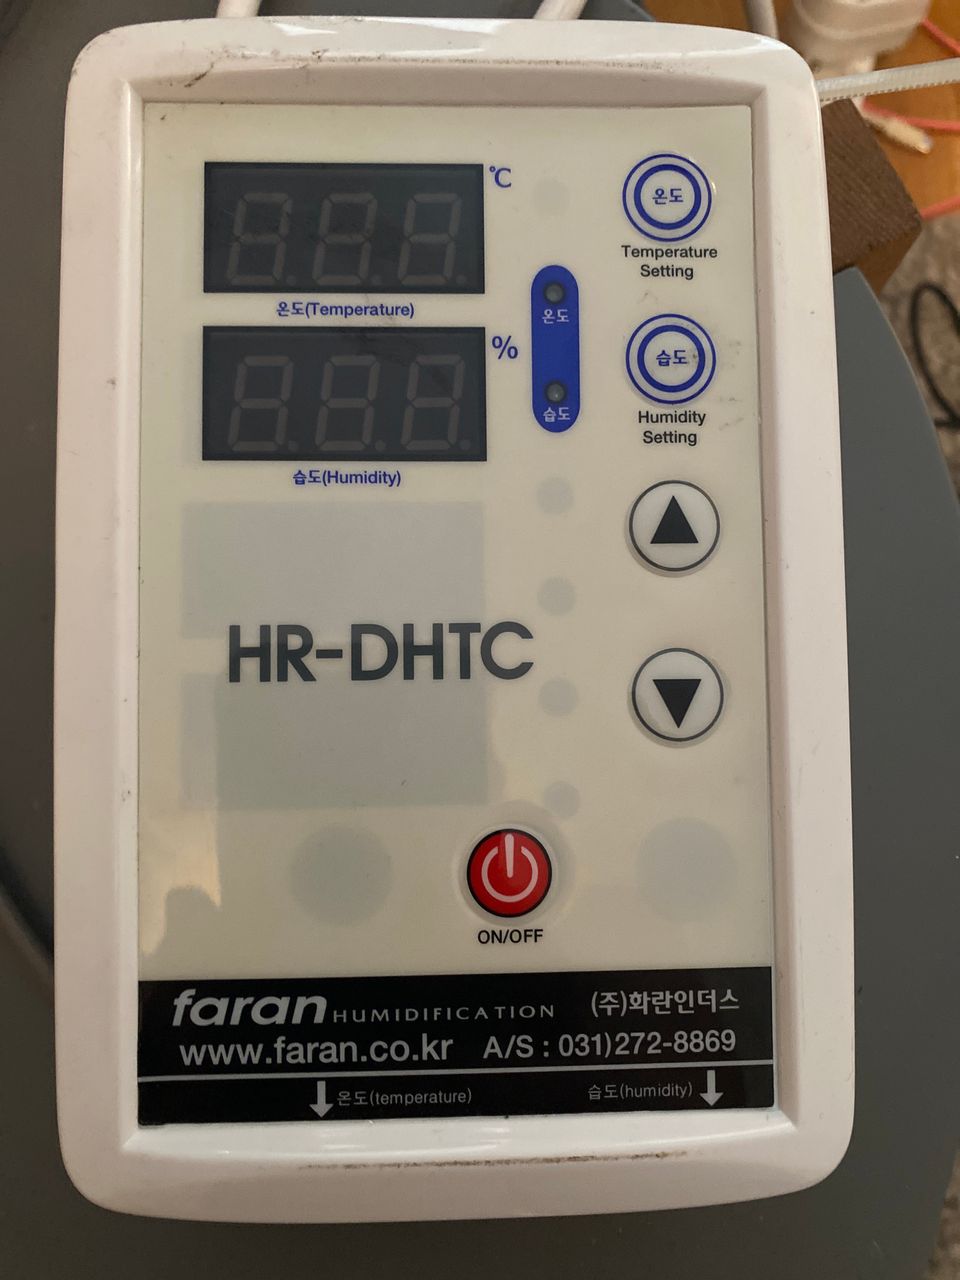 Faran HR-DHTC Lämpötila-ja ilmankosteusmittari.